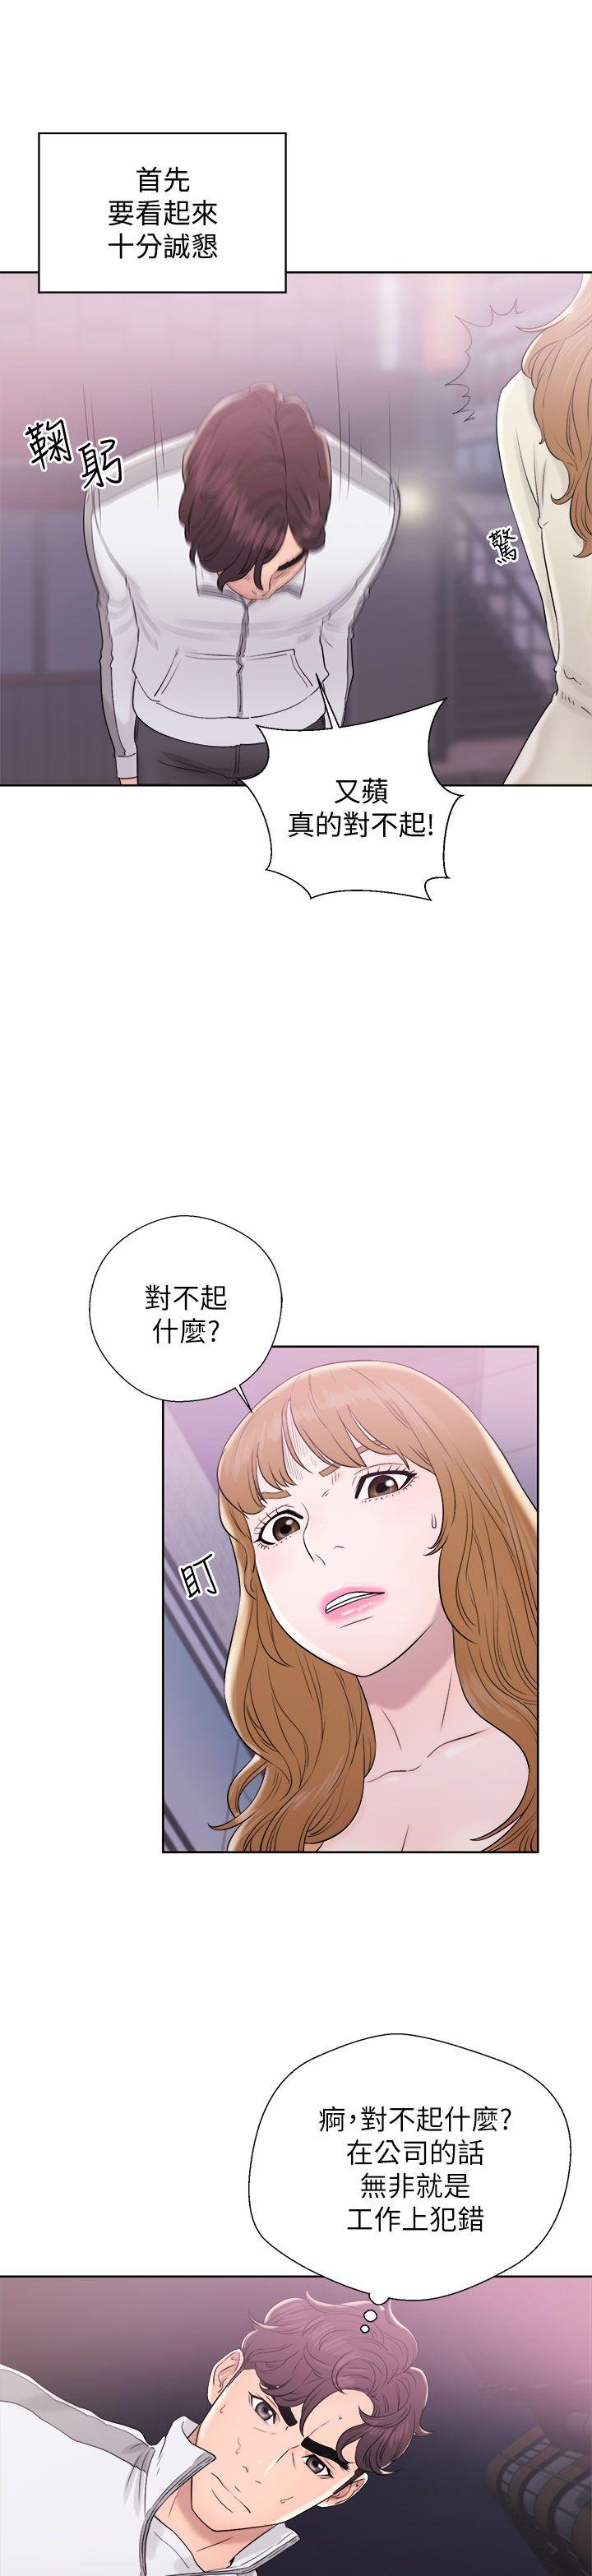 韩国污漫画 青春:逆齡小鮮肉 第10话 27